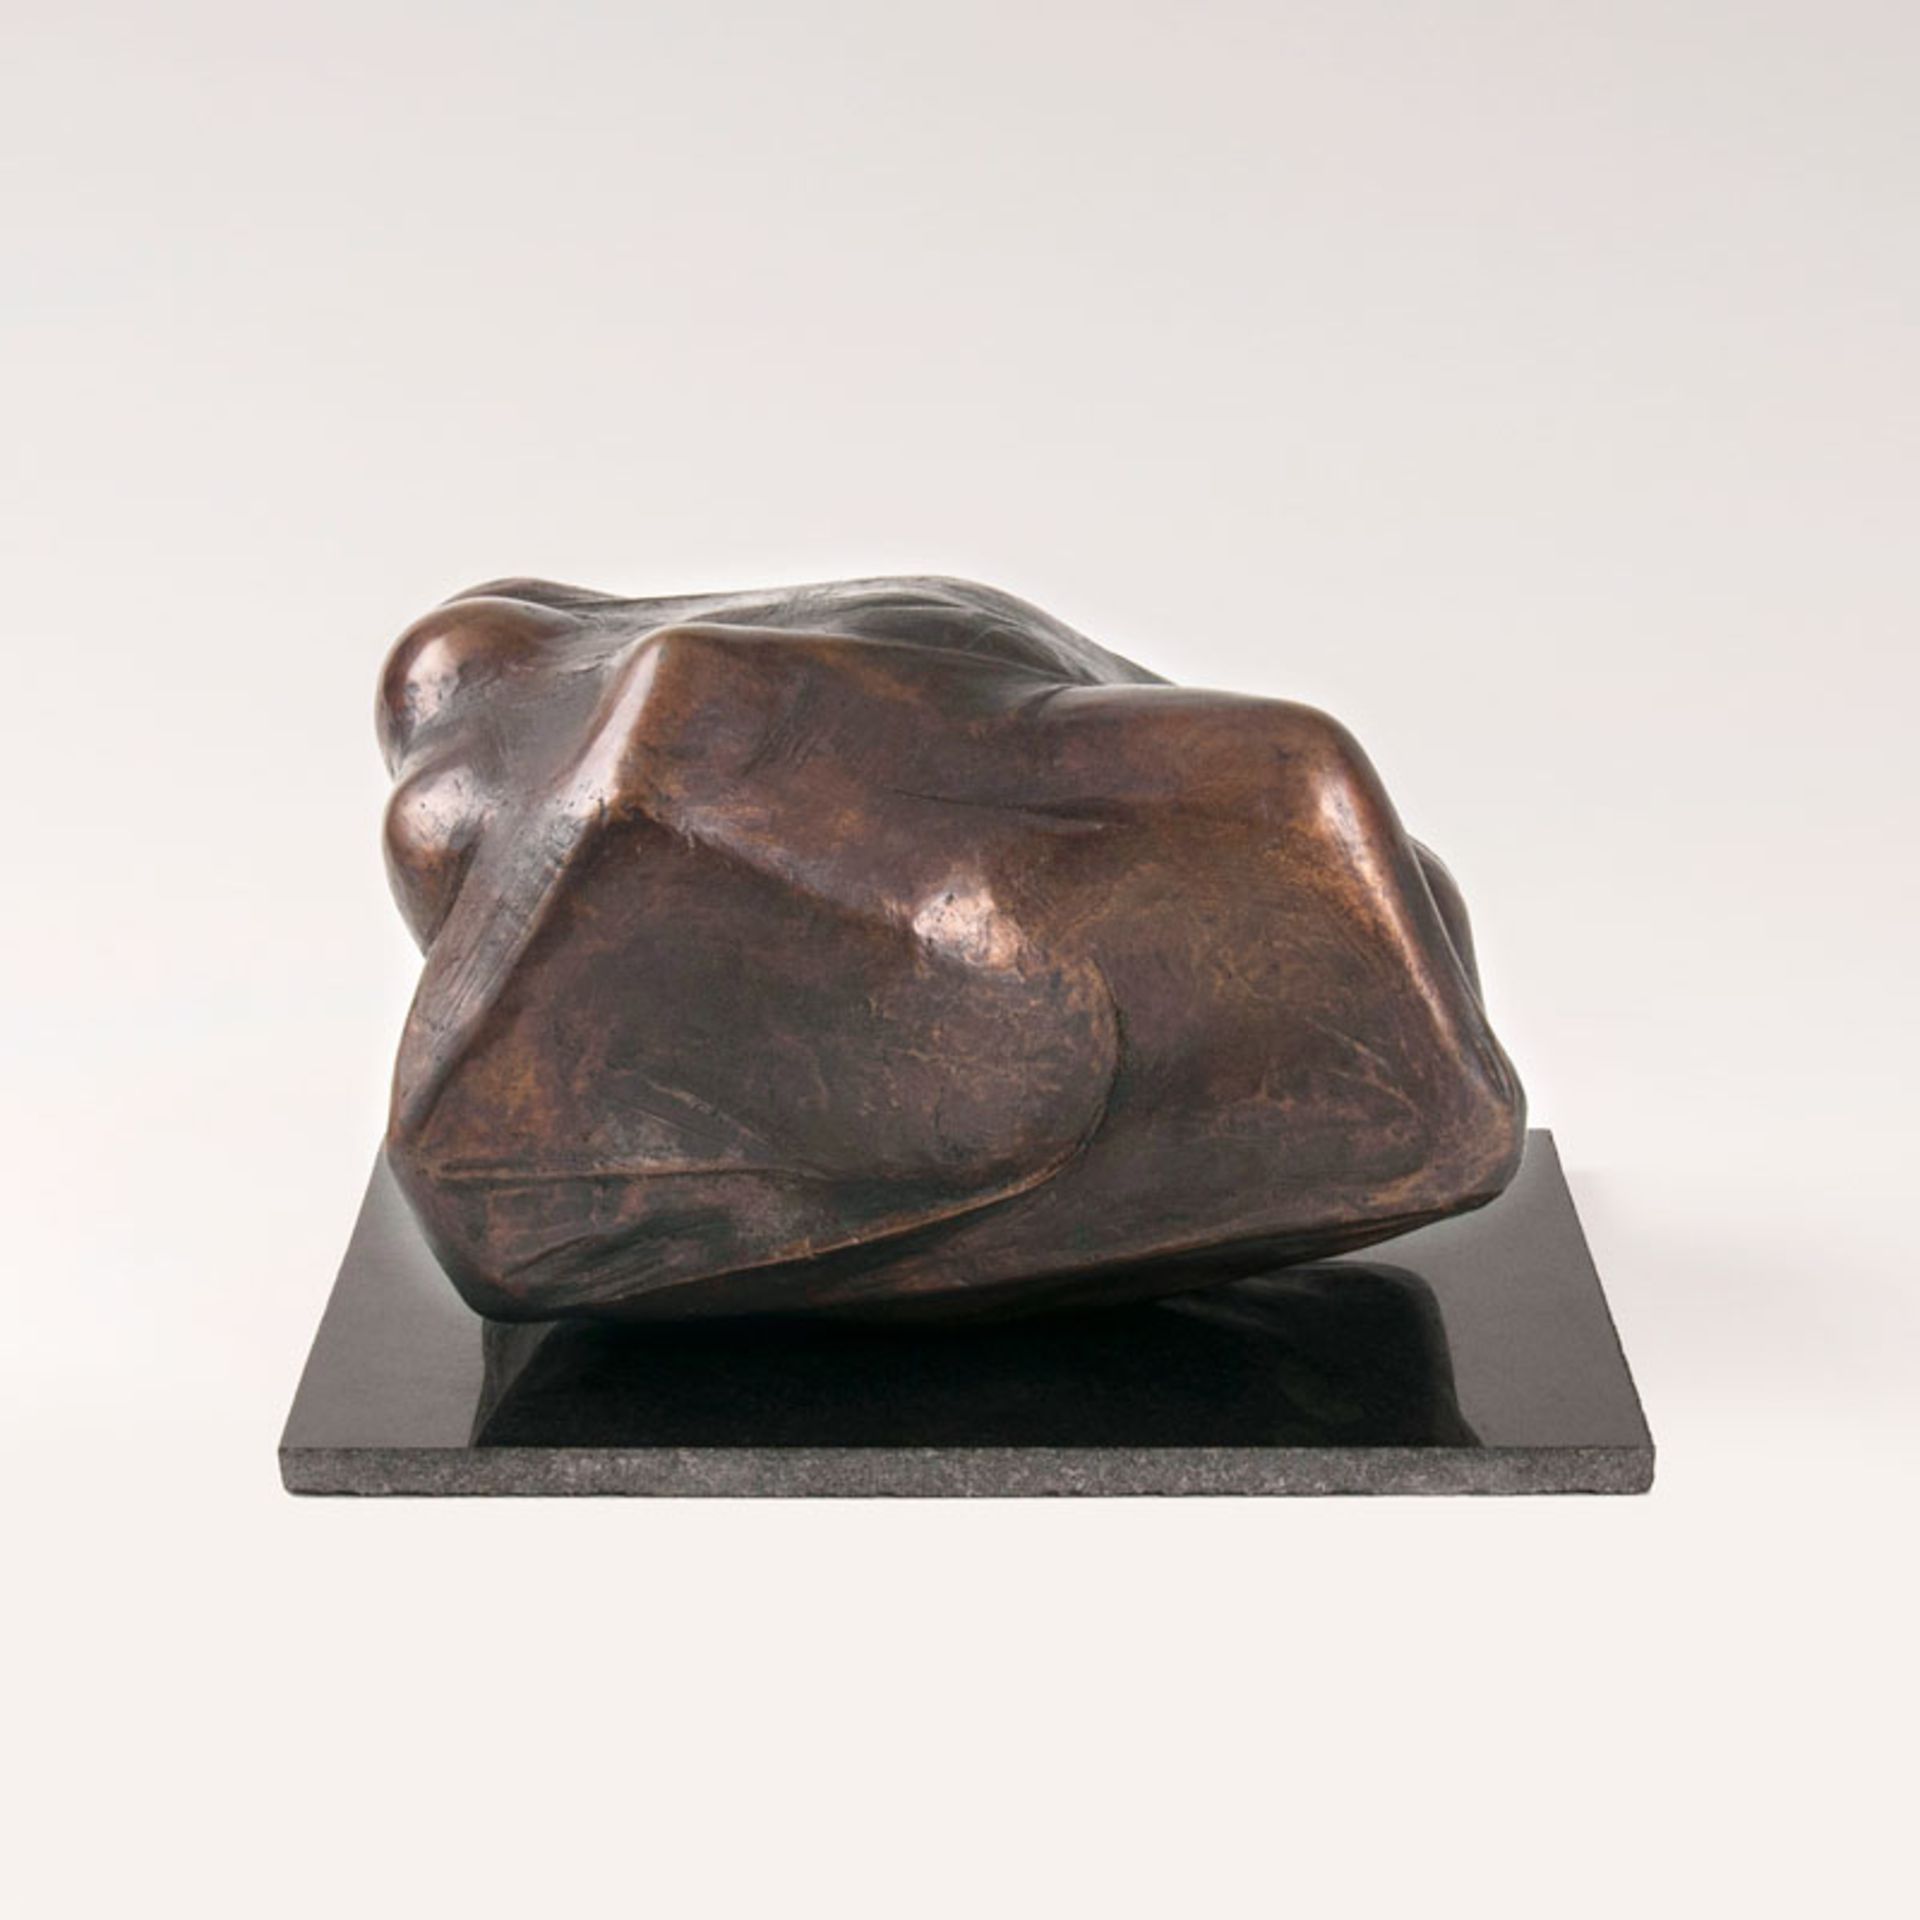 Rolf Kuhrt (Bergzow 1936) Bronze-Skulptur 'Wolke Sieben' 2000. Bronze mit brauner Patina, H. 13